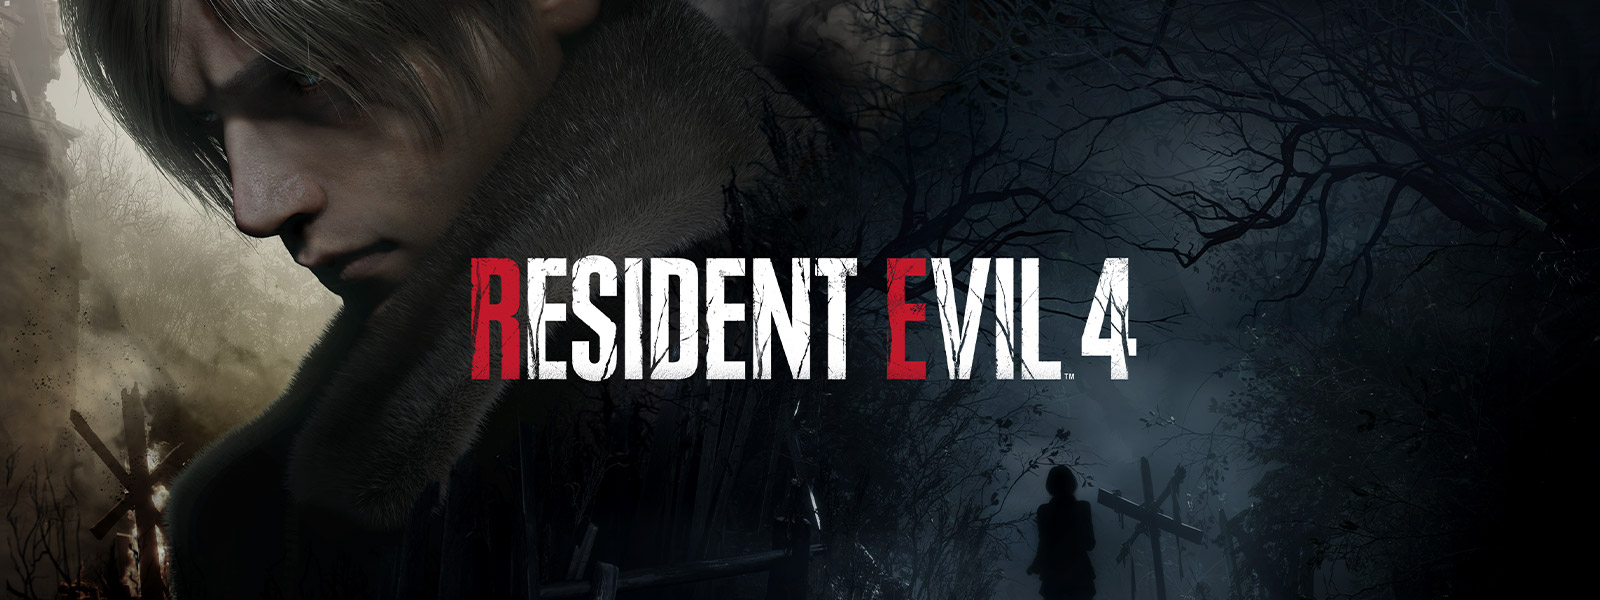 Resident Evil 4, En man med grått hår vänder sig sorgset bort medan en kvinna promenerar längs en mörk och kuslig skogsstig.